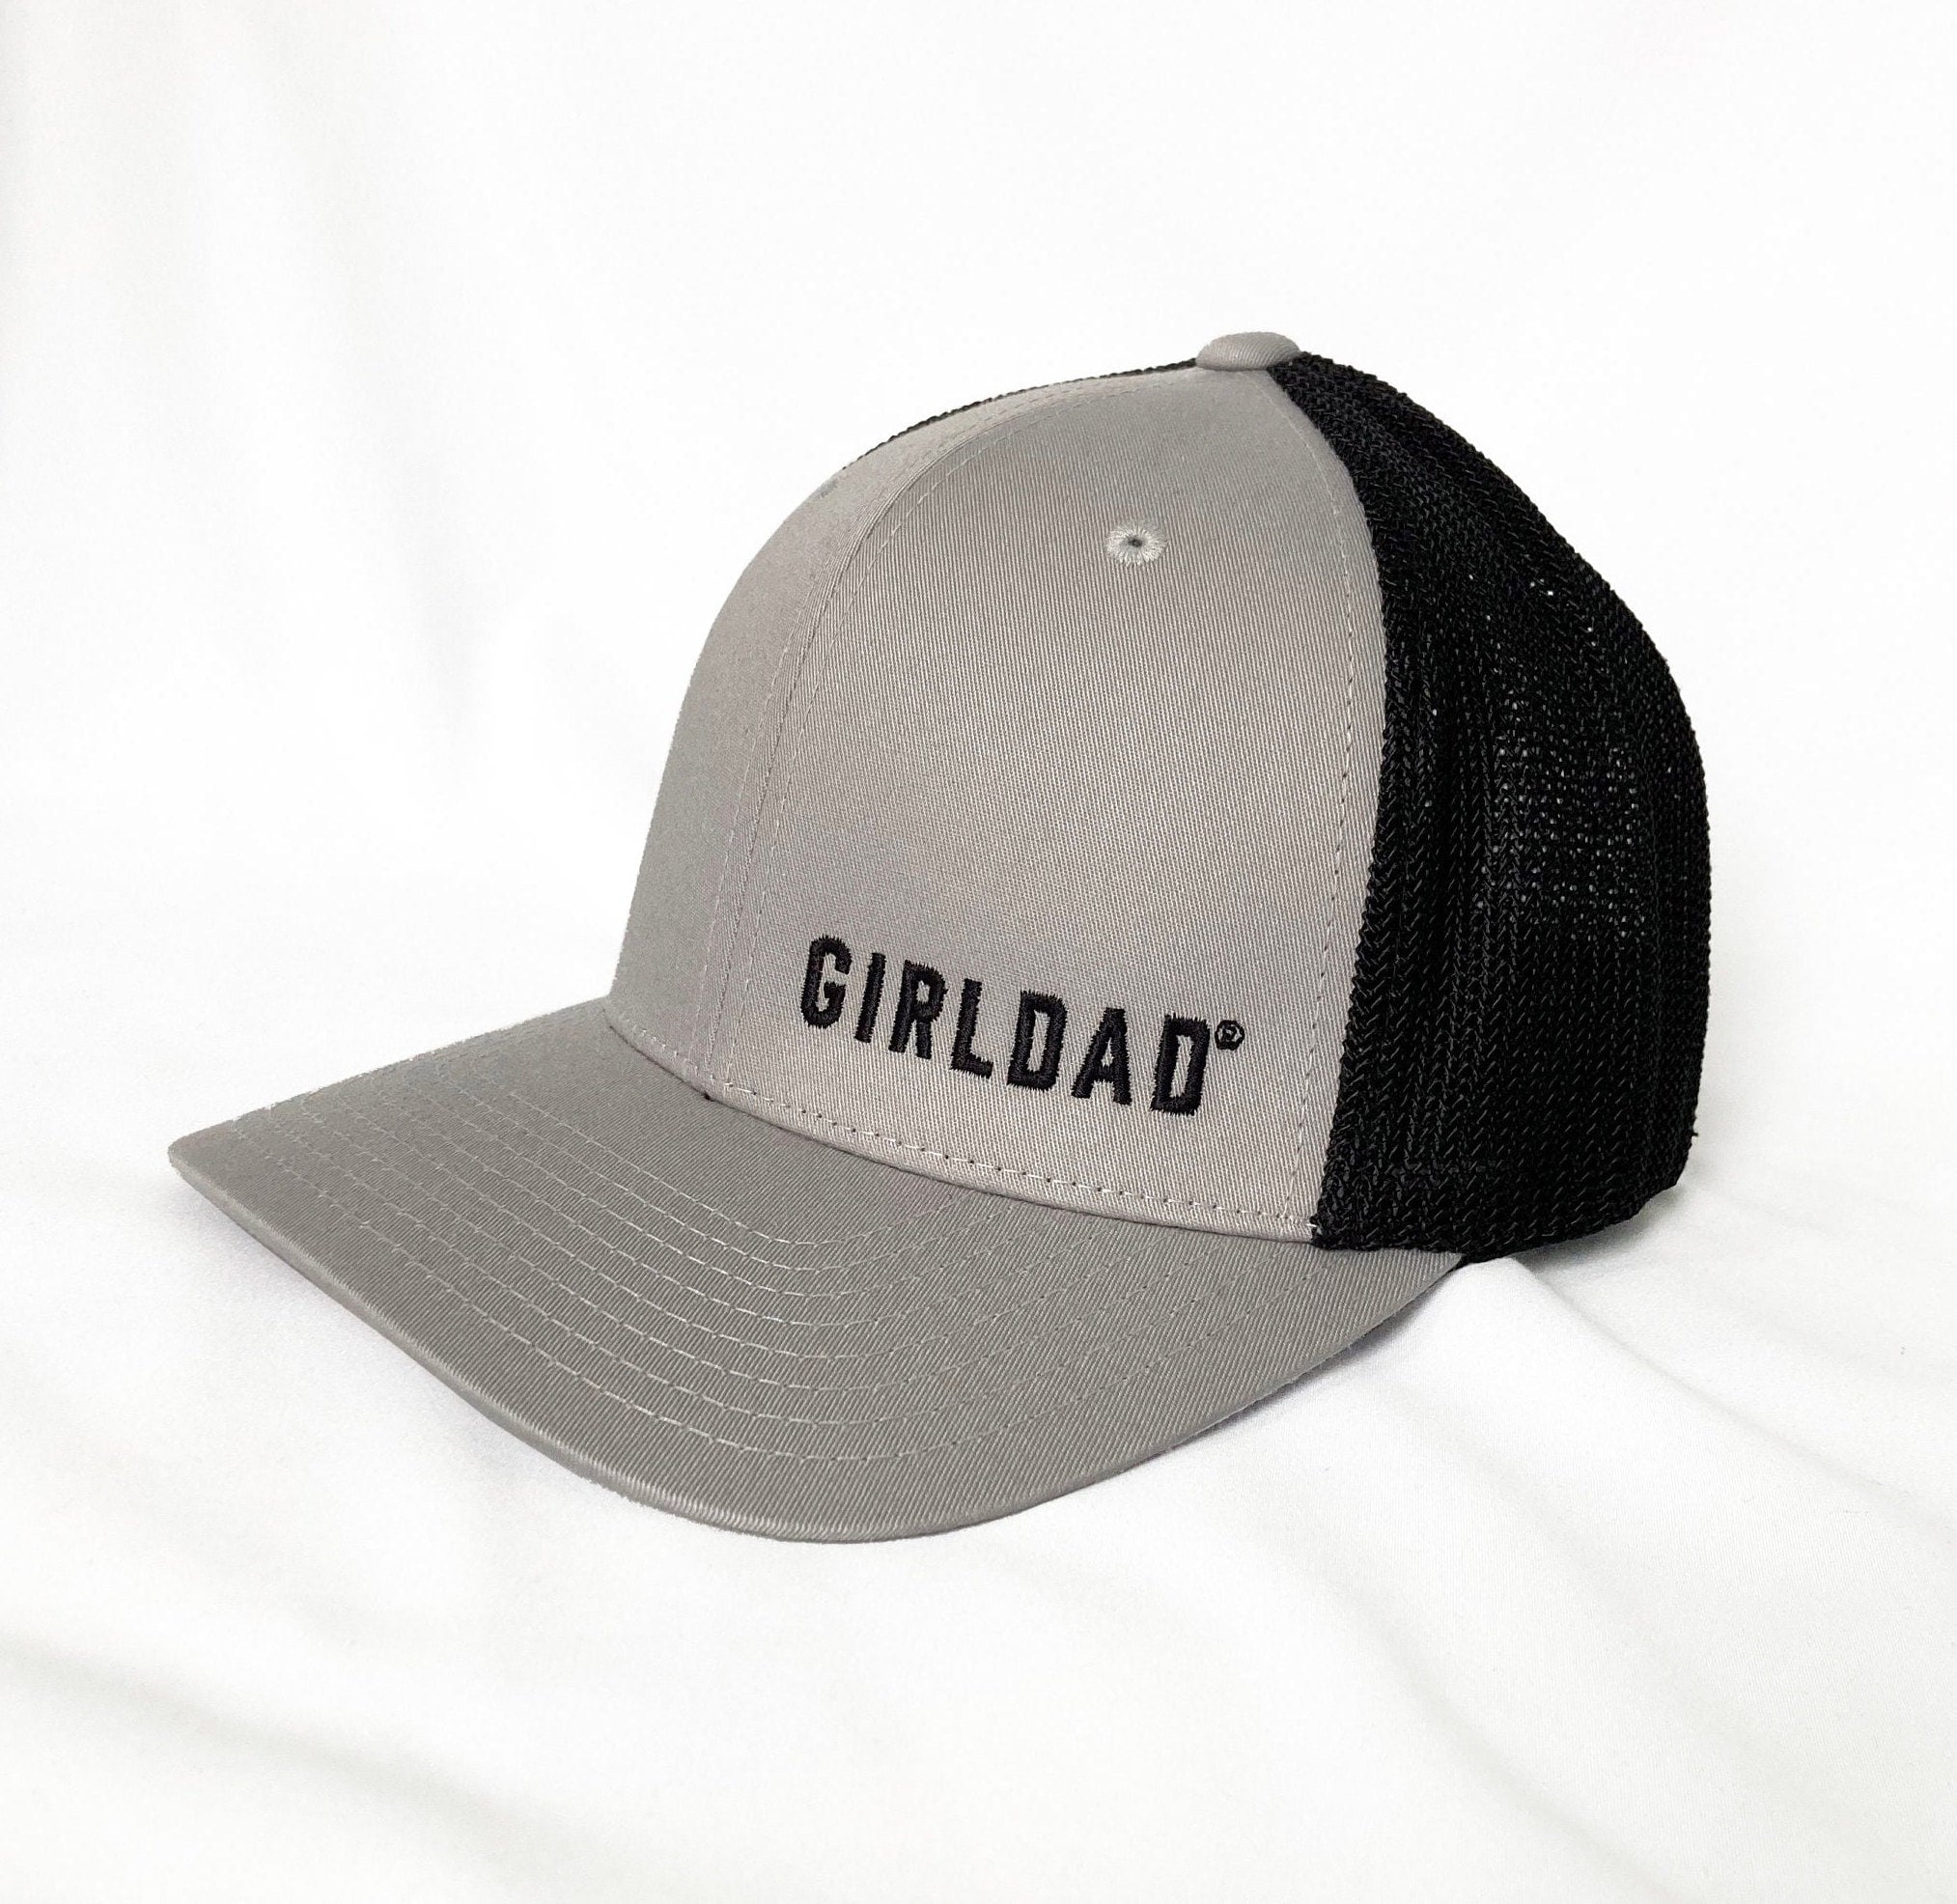 Girldad® Silver/Black Mesh Back Embroidered Flexfit Hat